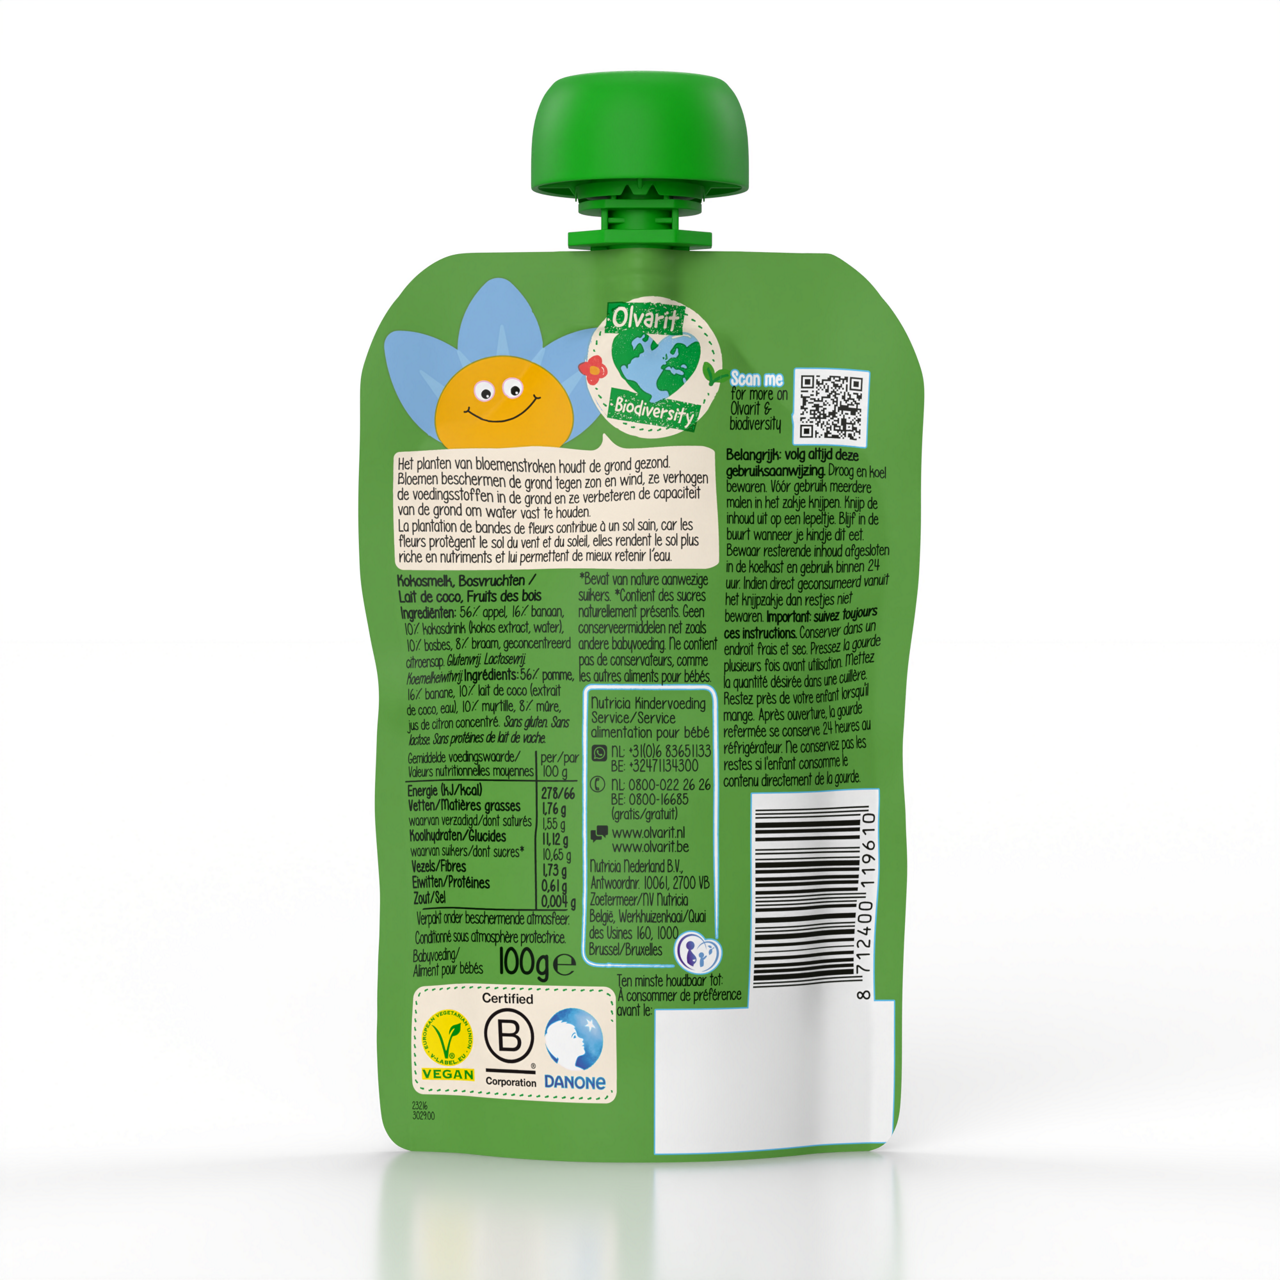 Smoothie Olvarit 100% végétal à base de lait de coco. Visitez Olvarit.be pour plus d'informations sur la nutrition de votre bébé et sur les produits Olvarit.